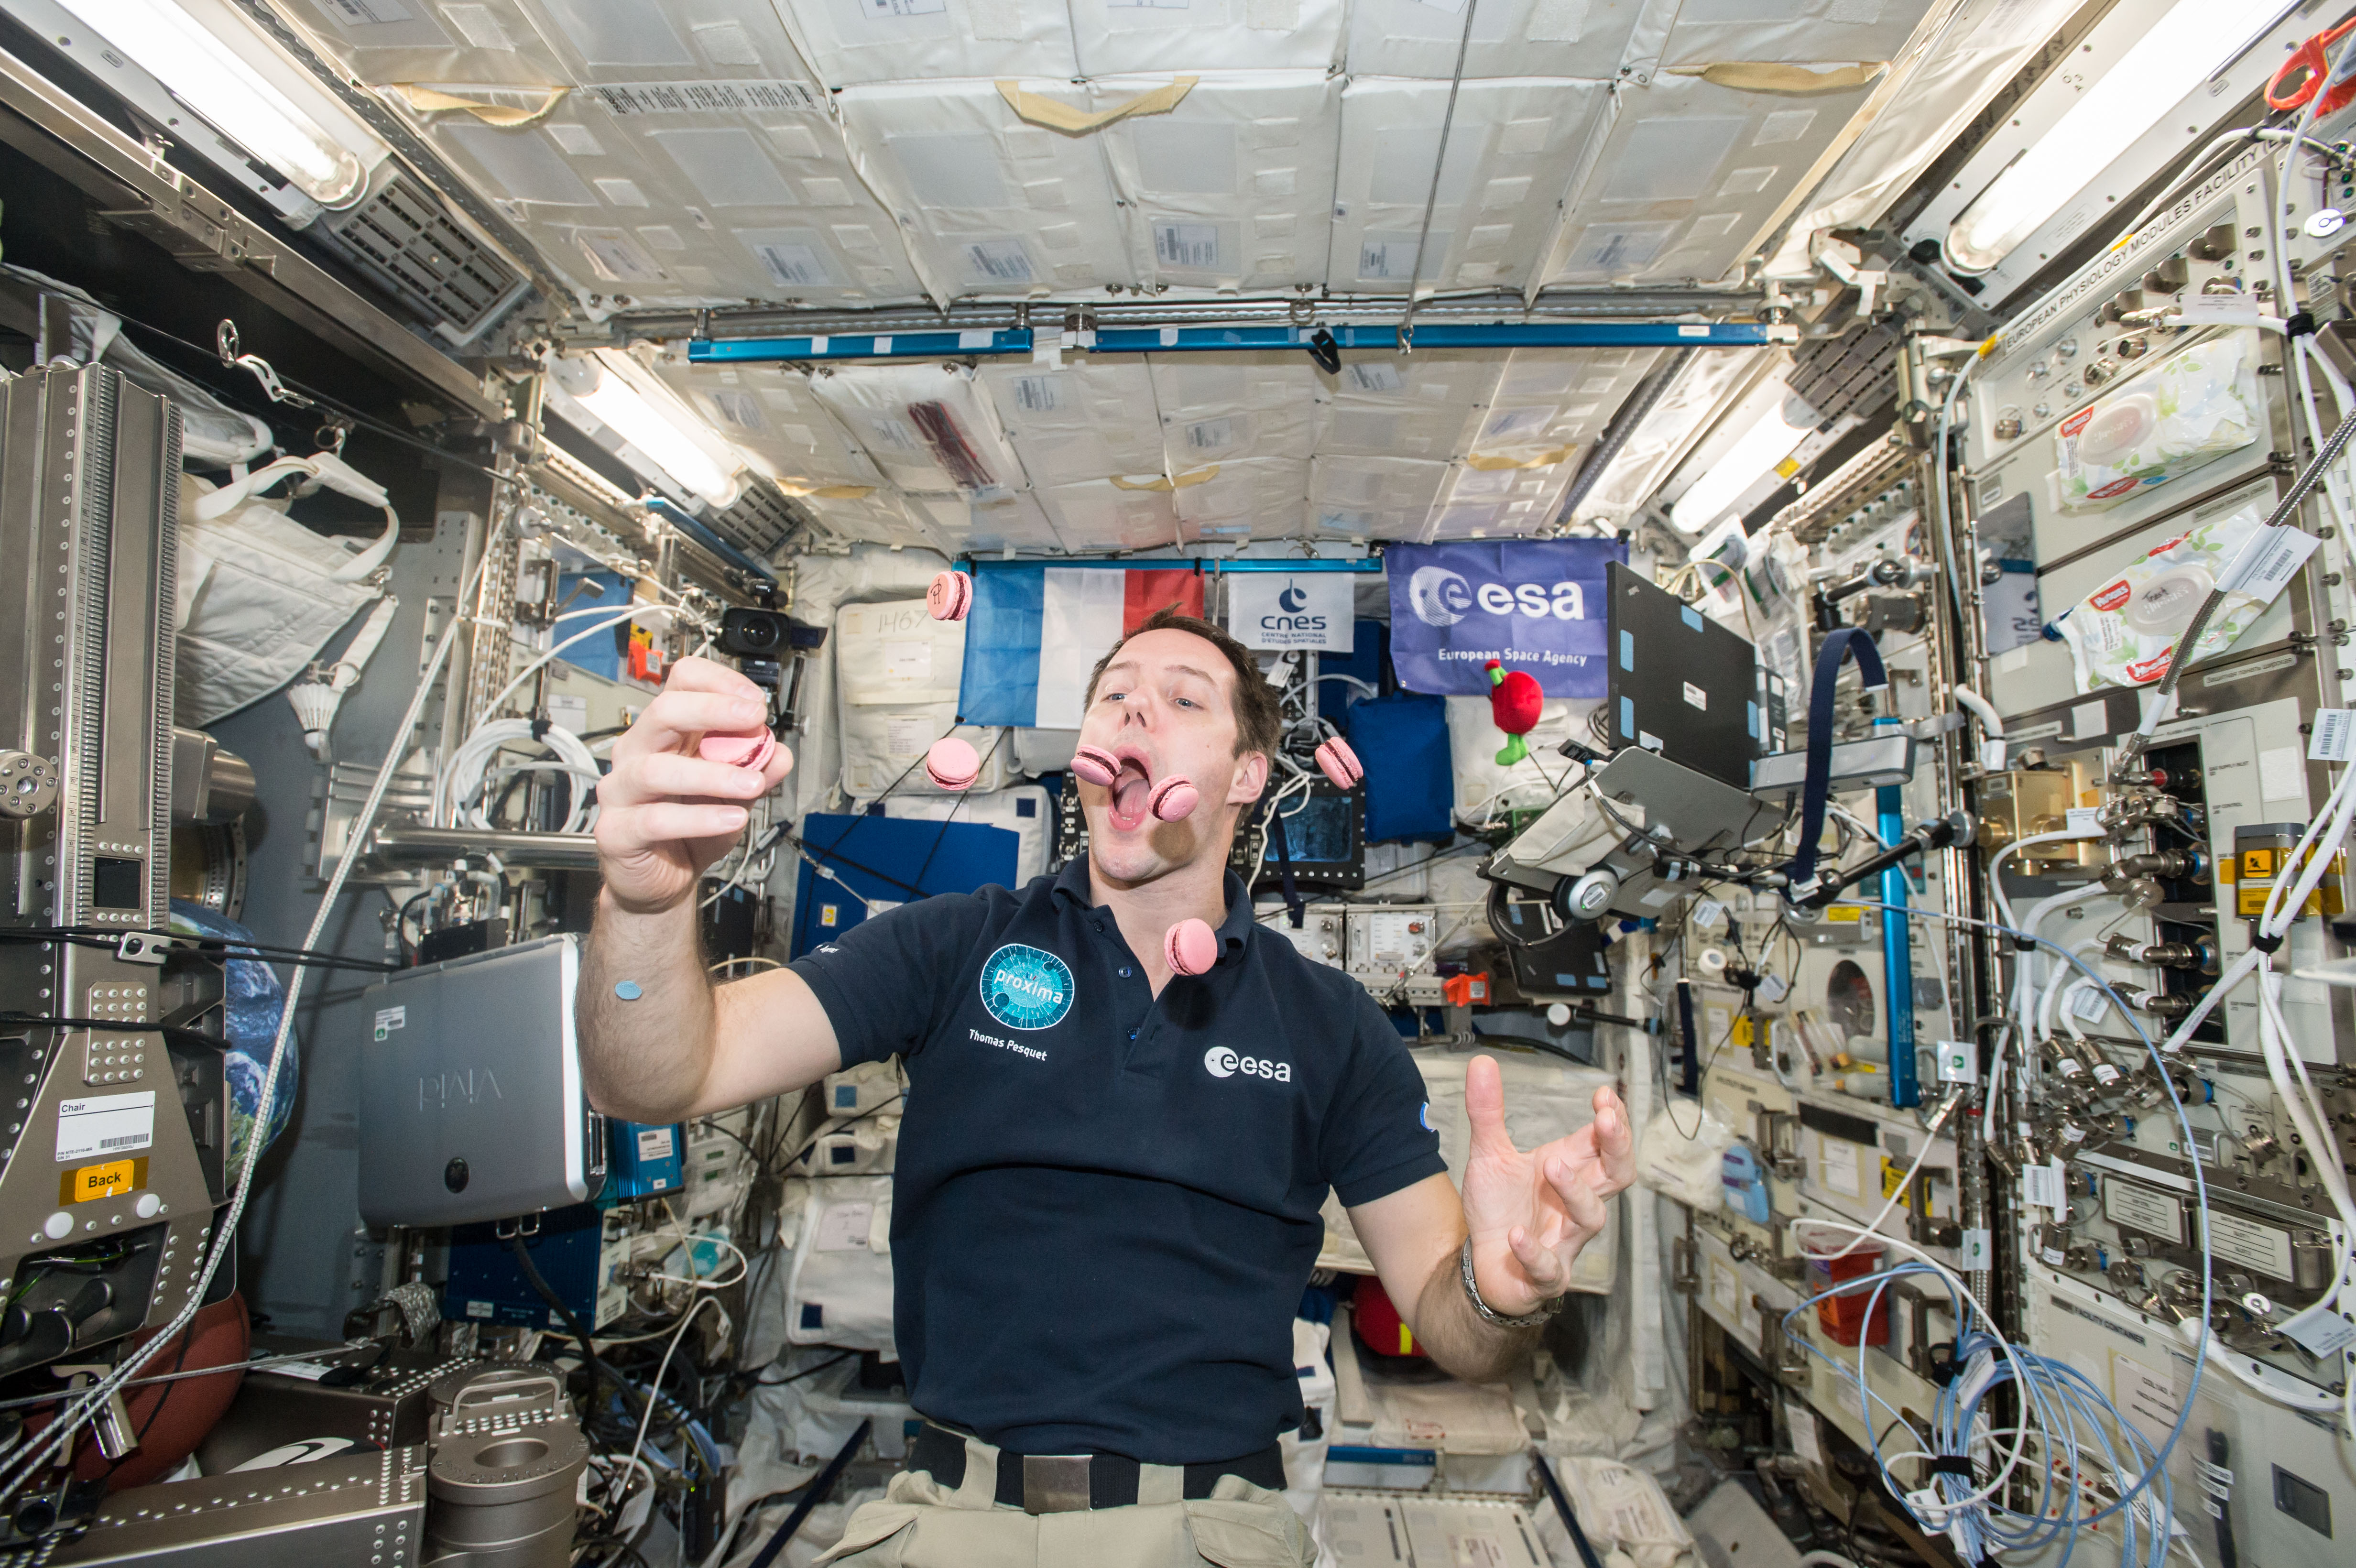 Наука поможет регулировать космос. Кухня на МКС. Космонавт в космосе. Космонавт в невесомости. Космонавты на космической станции.